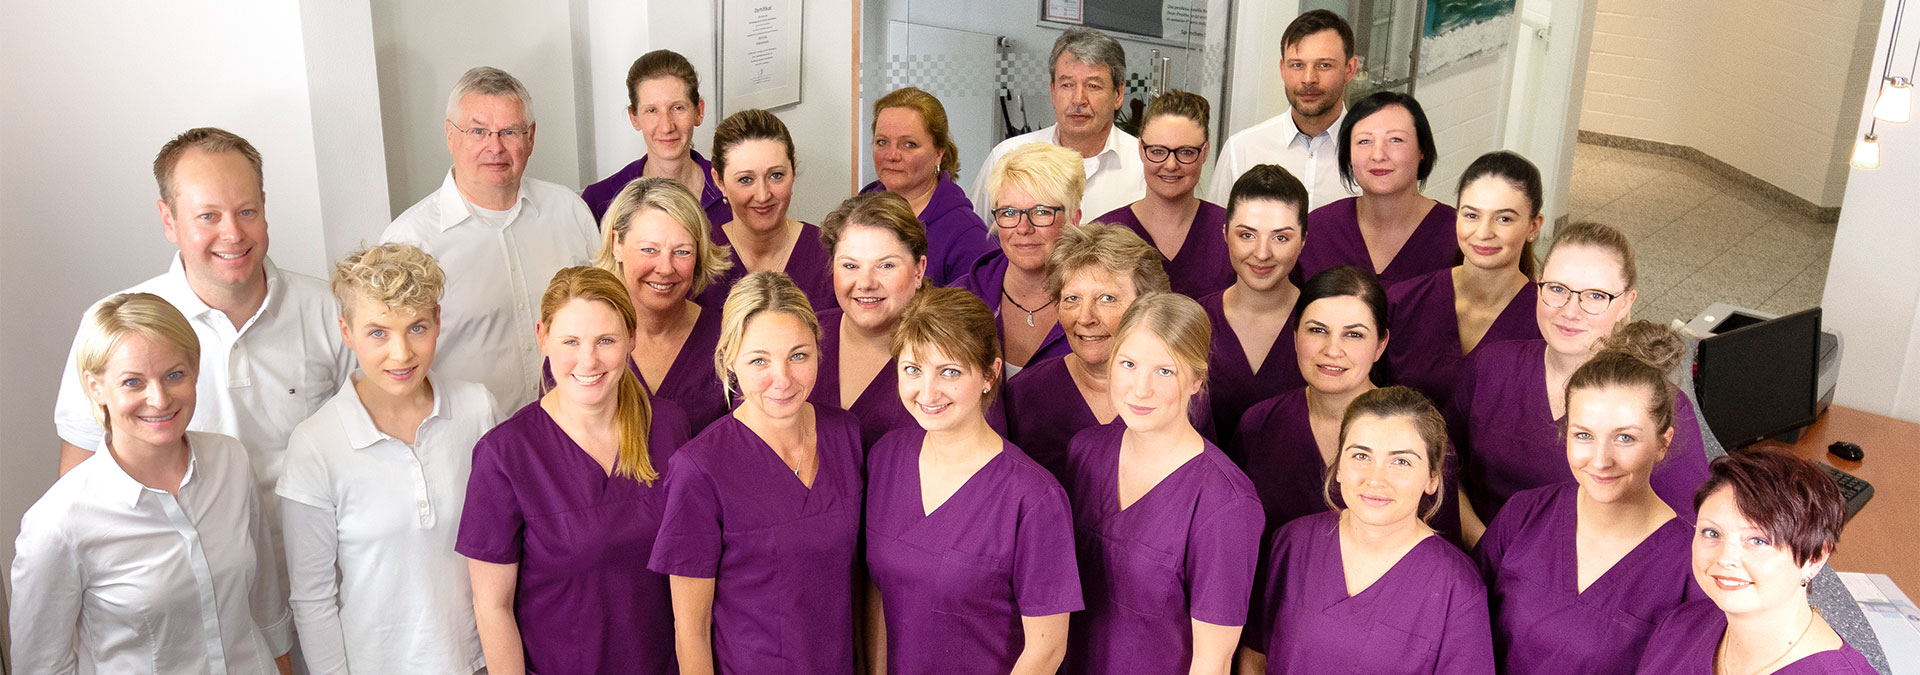 Praxisteam - Dr. Stanke & Kollegen - Ihre Zahnarztpraxis mit eigenem Dentallabor in Hamm.